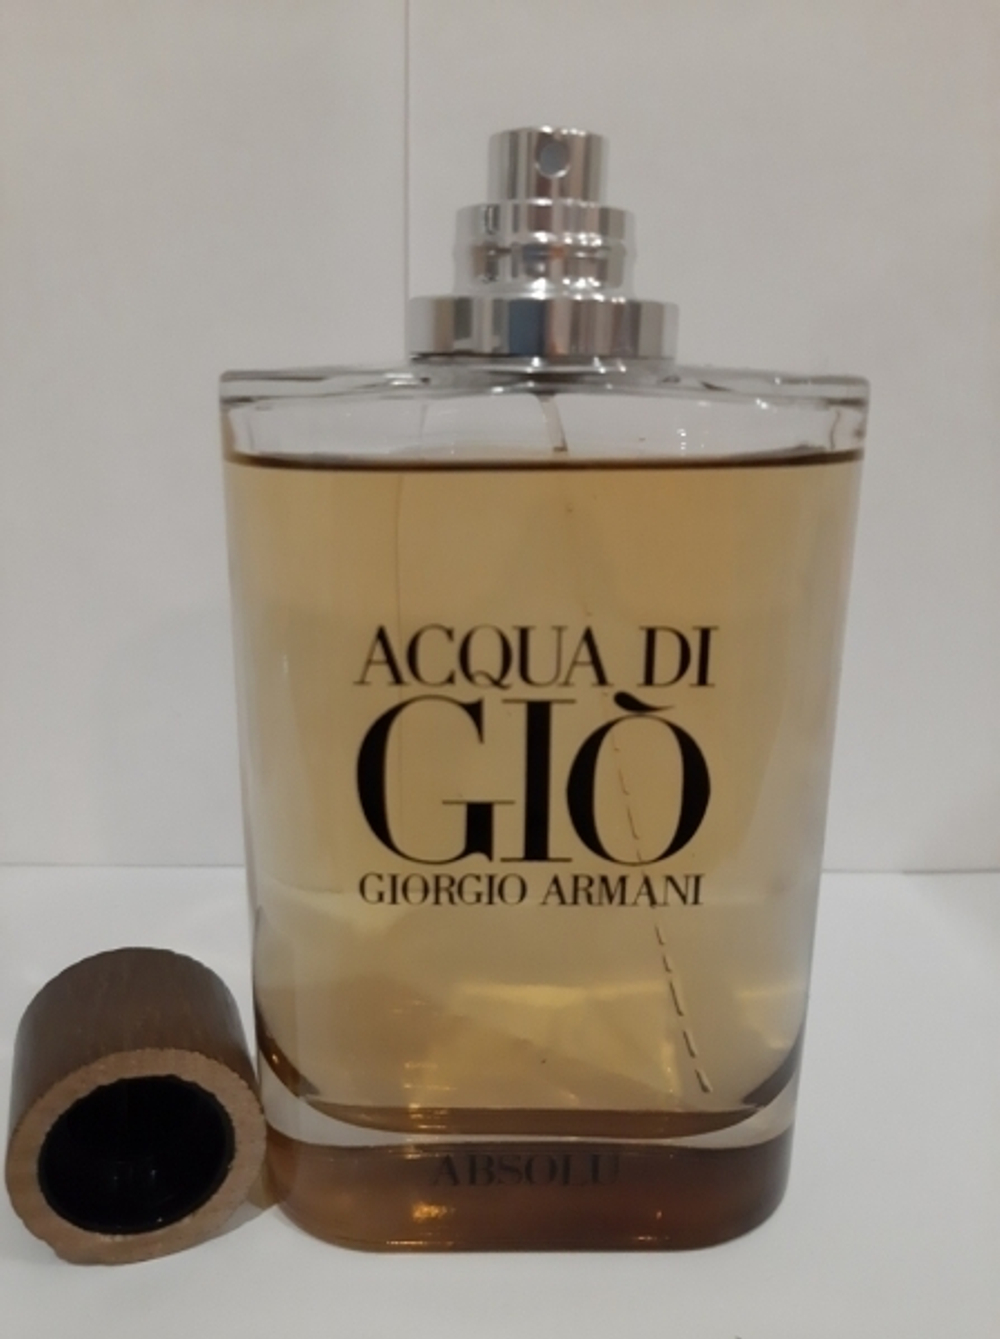 Giorgio Armani Acqua Di Gio Absolu (duty free парфюмерия)